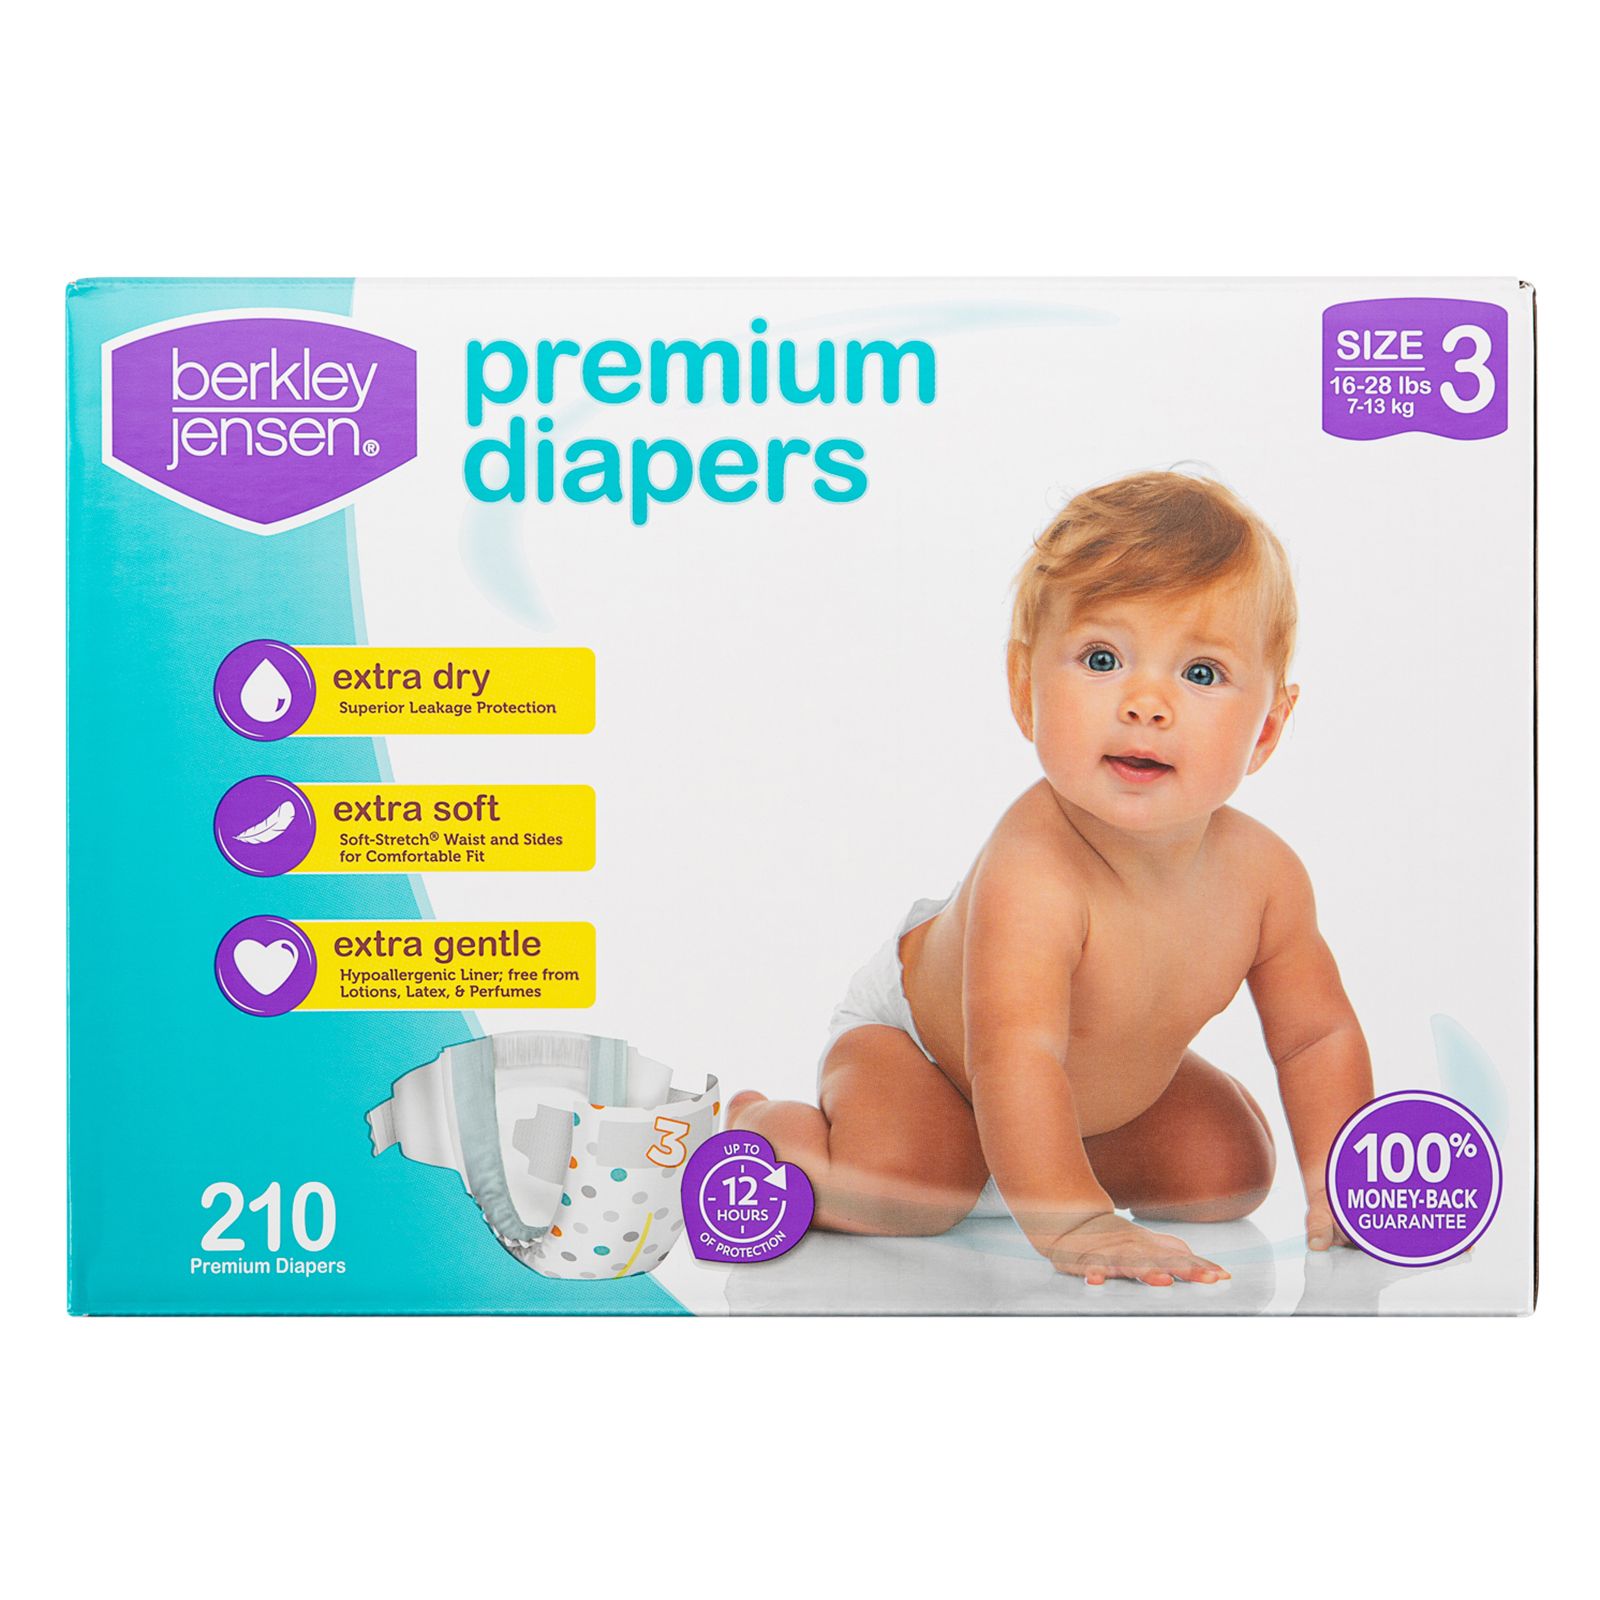 Berkley Jensen Premium Diapers, Size 3/180 ct.